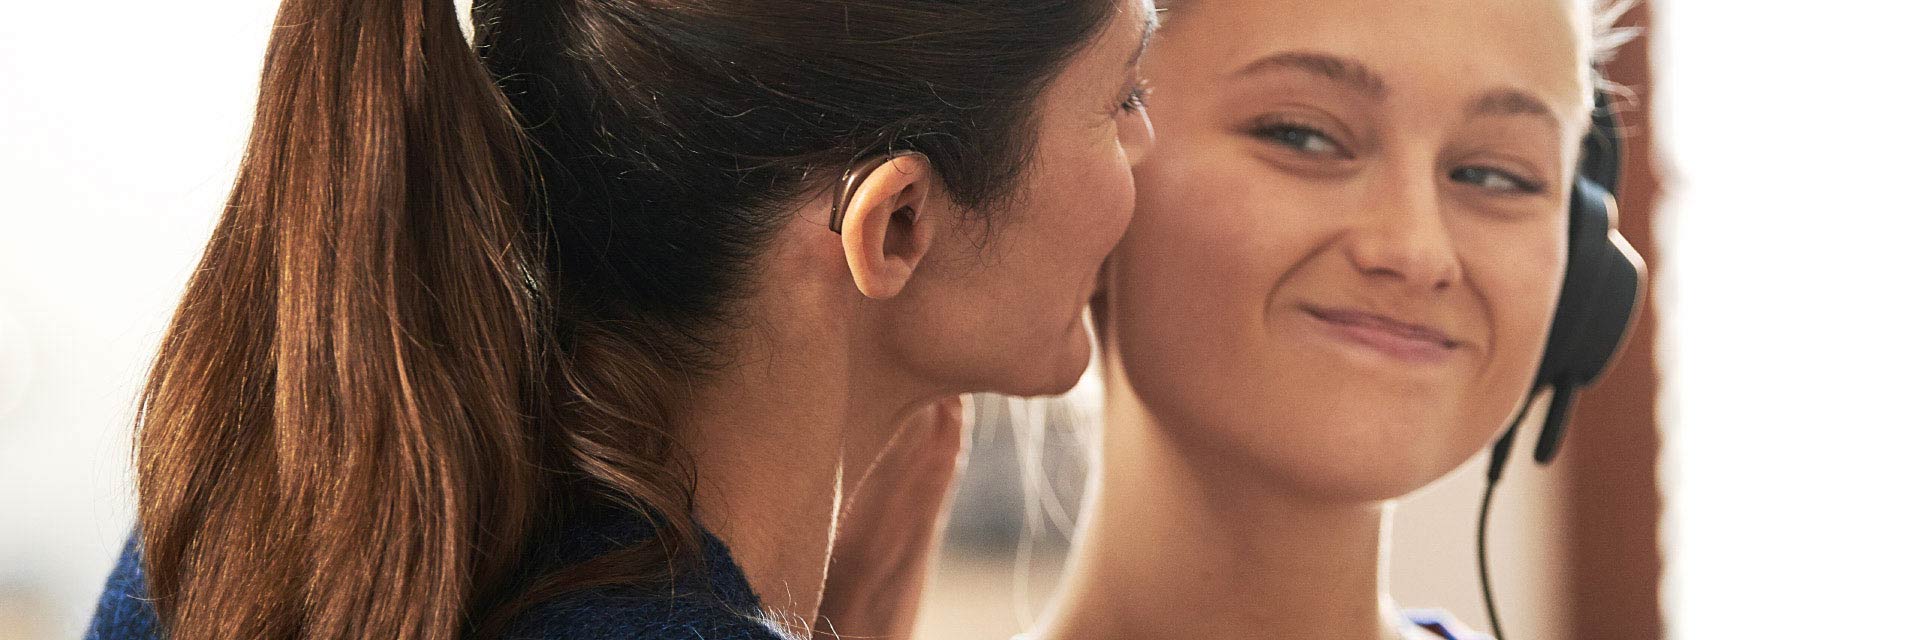 Immagine di una donna con un apparecchio acustico nell'orecchio e di una ragazza che sorridono l'una con l'altra. 